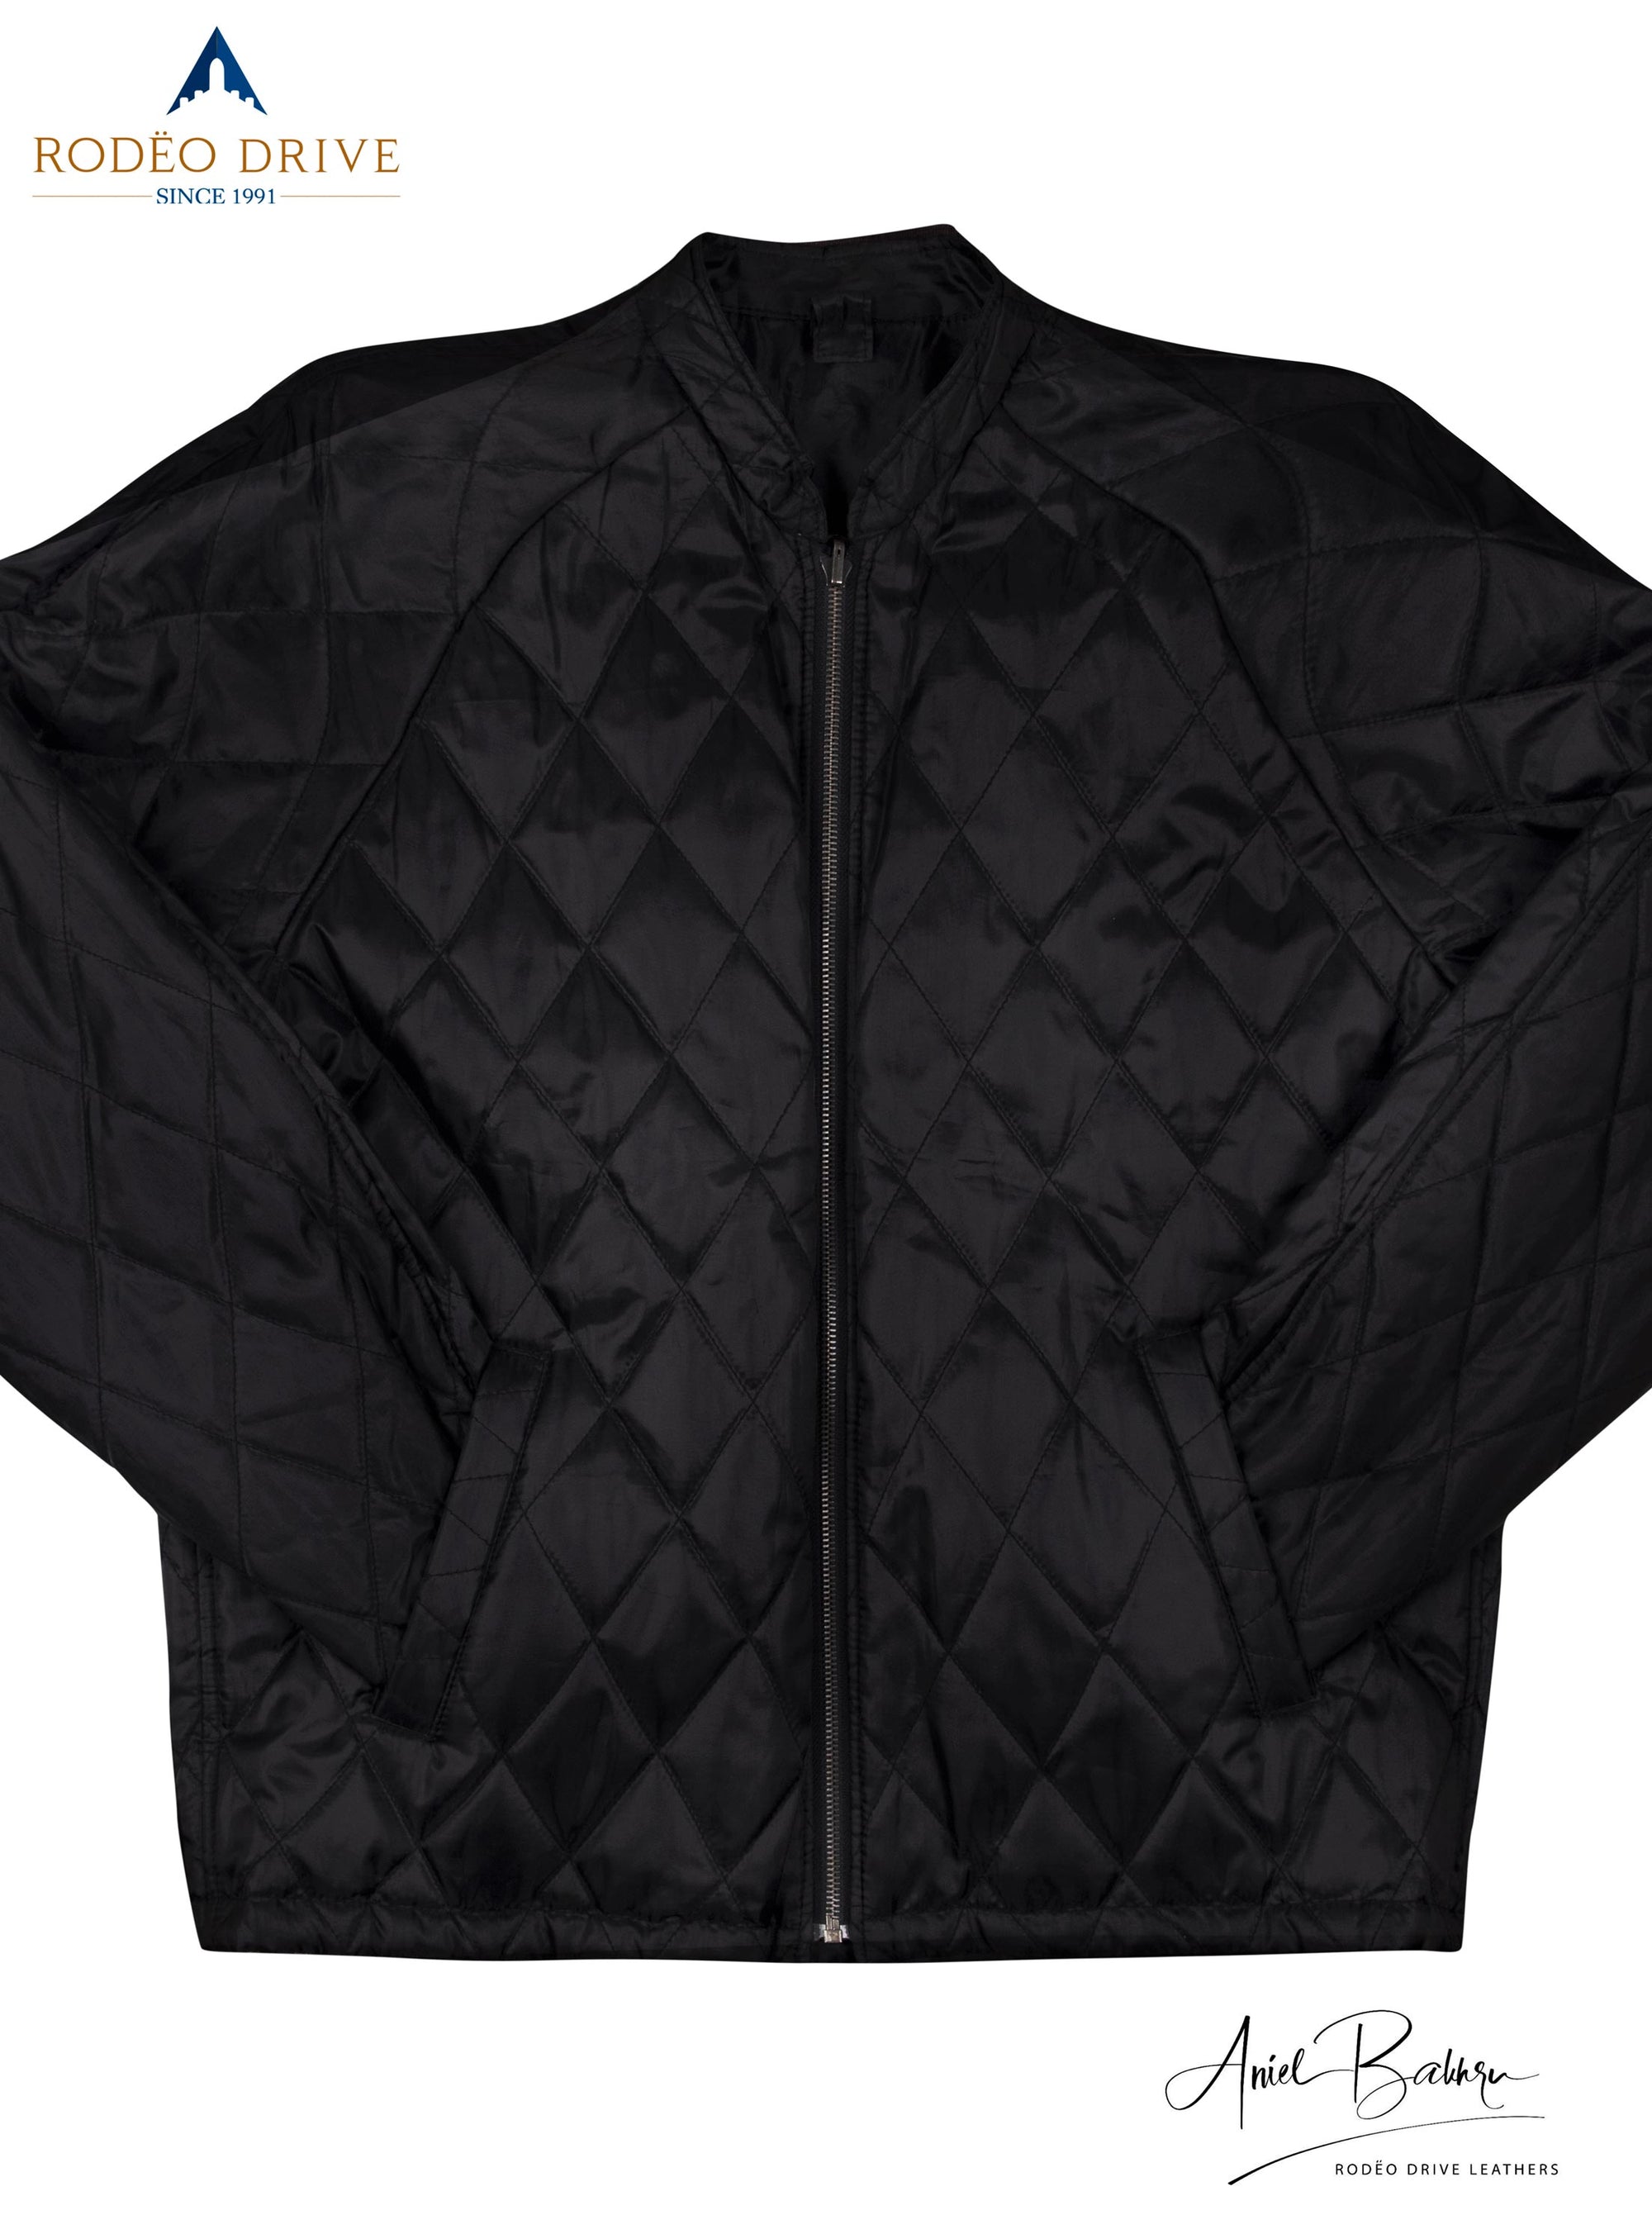 Full image of patterned black leather jacket. Both its hands are tucked inside side slit pocket.